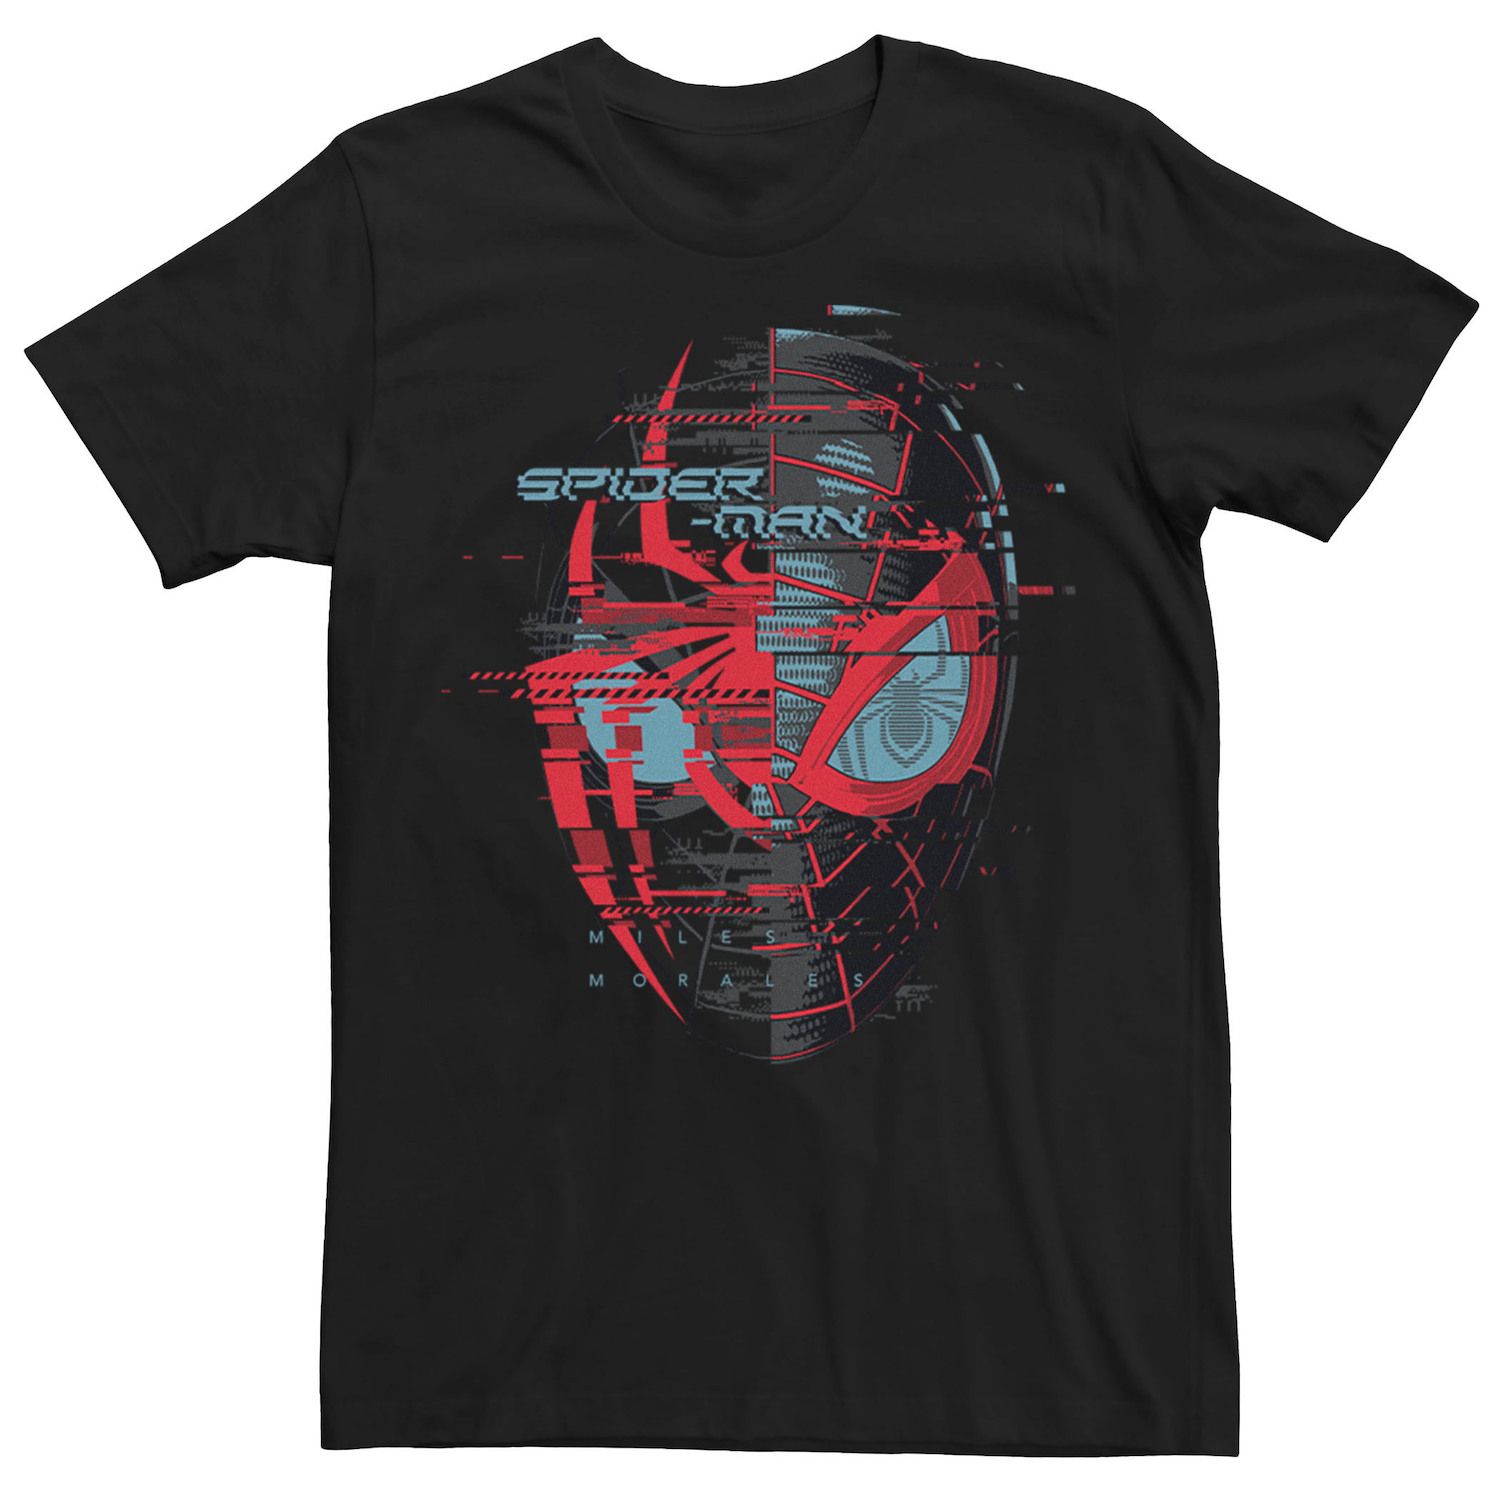 Мужская футболка с логотипом «Человек-паук Майлз Моралес» Marvel набор marvel человек паук майлз моралес стражи галактики marvel для ps5